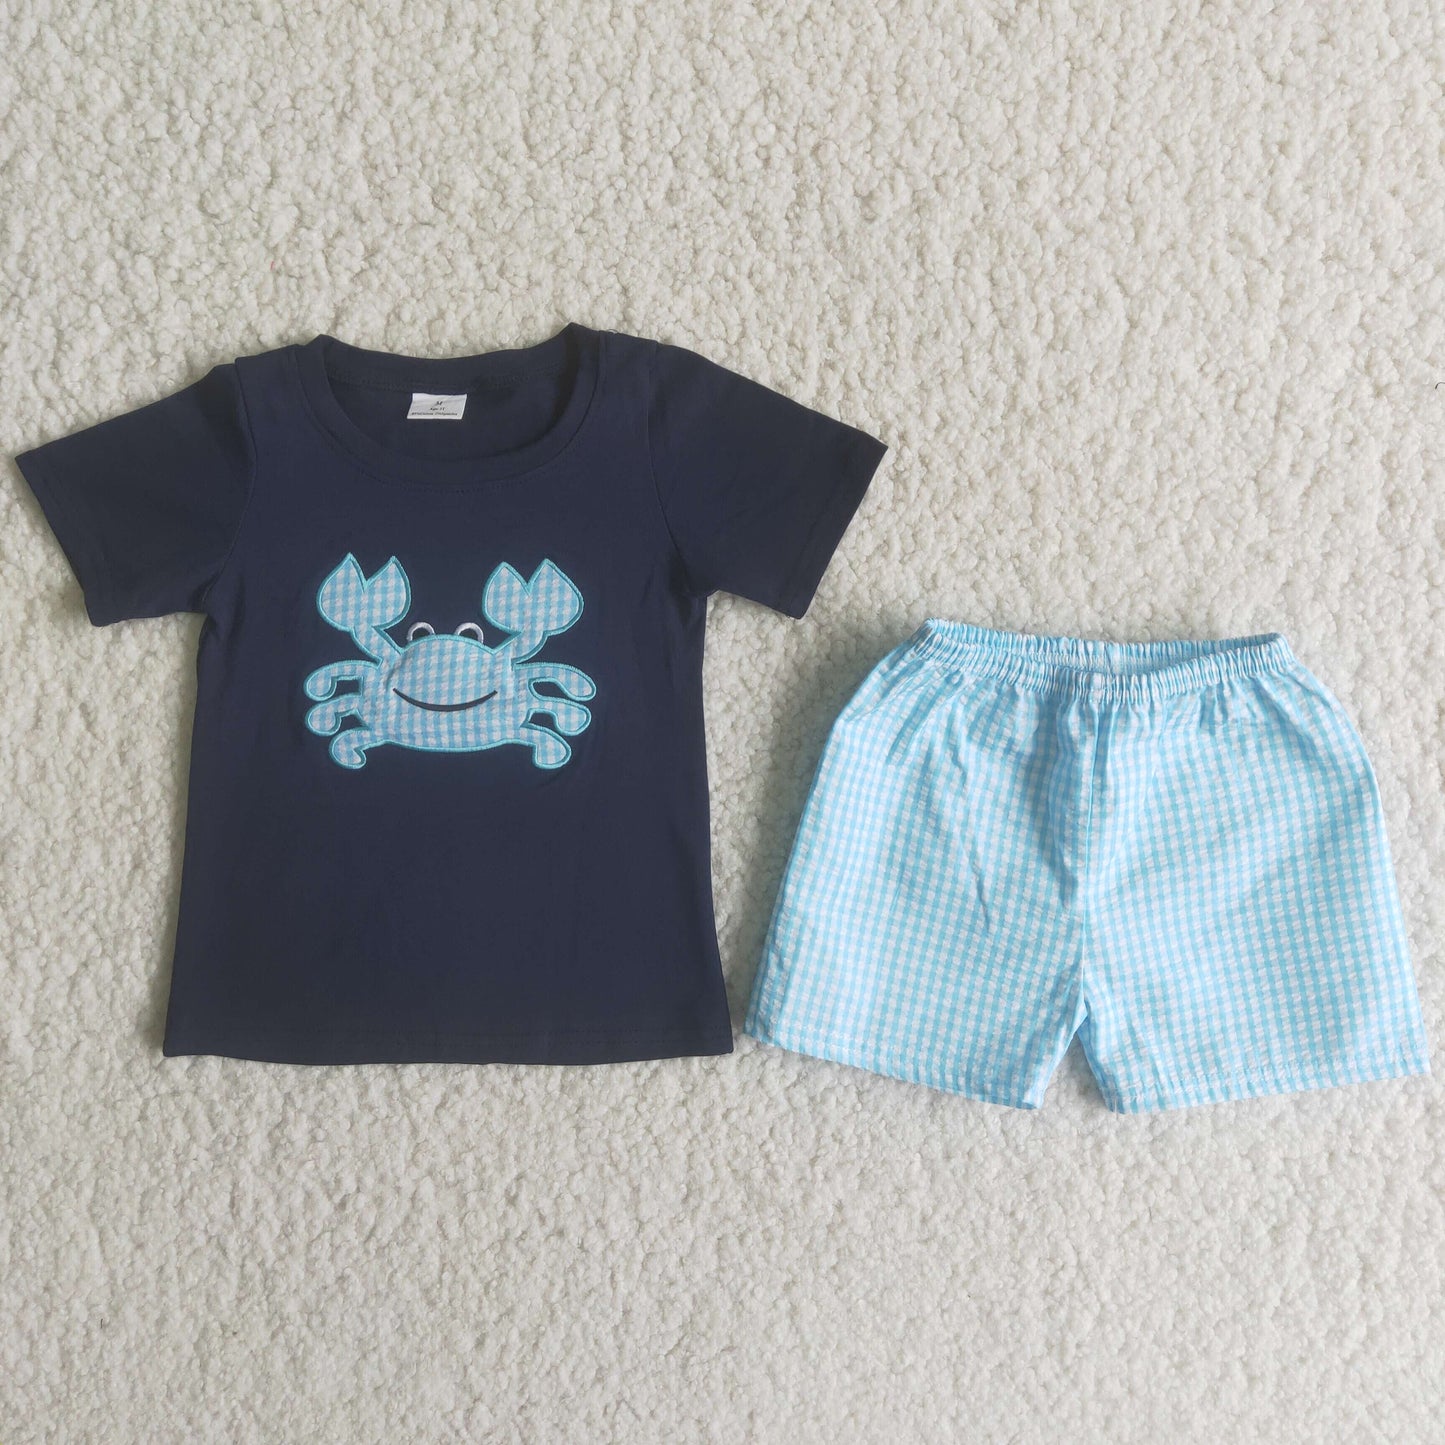 rts no moq A16-14 Blue crab blue plaid pants suit